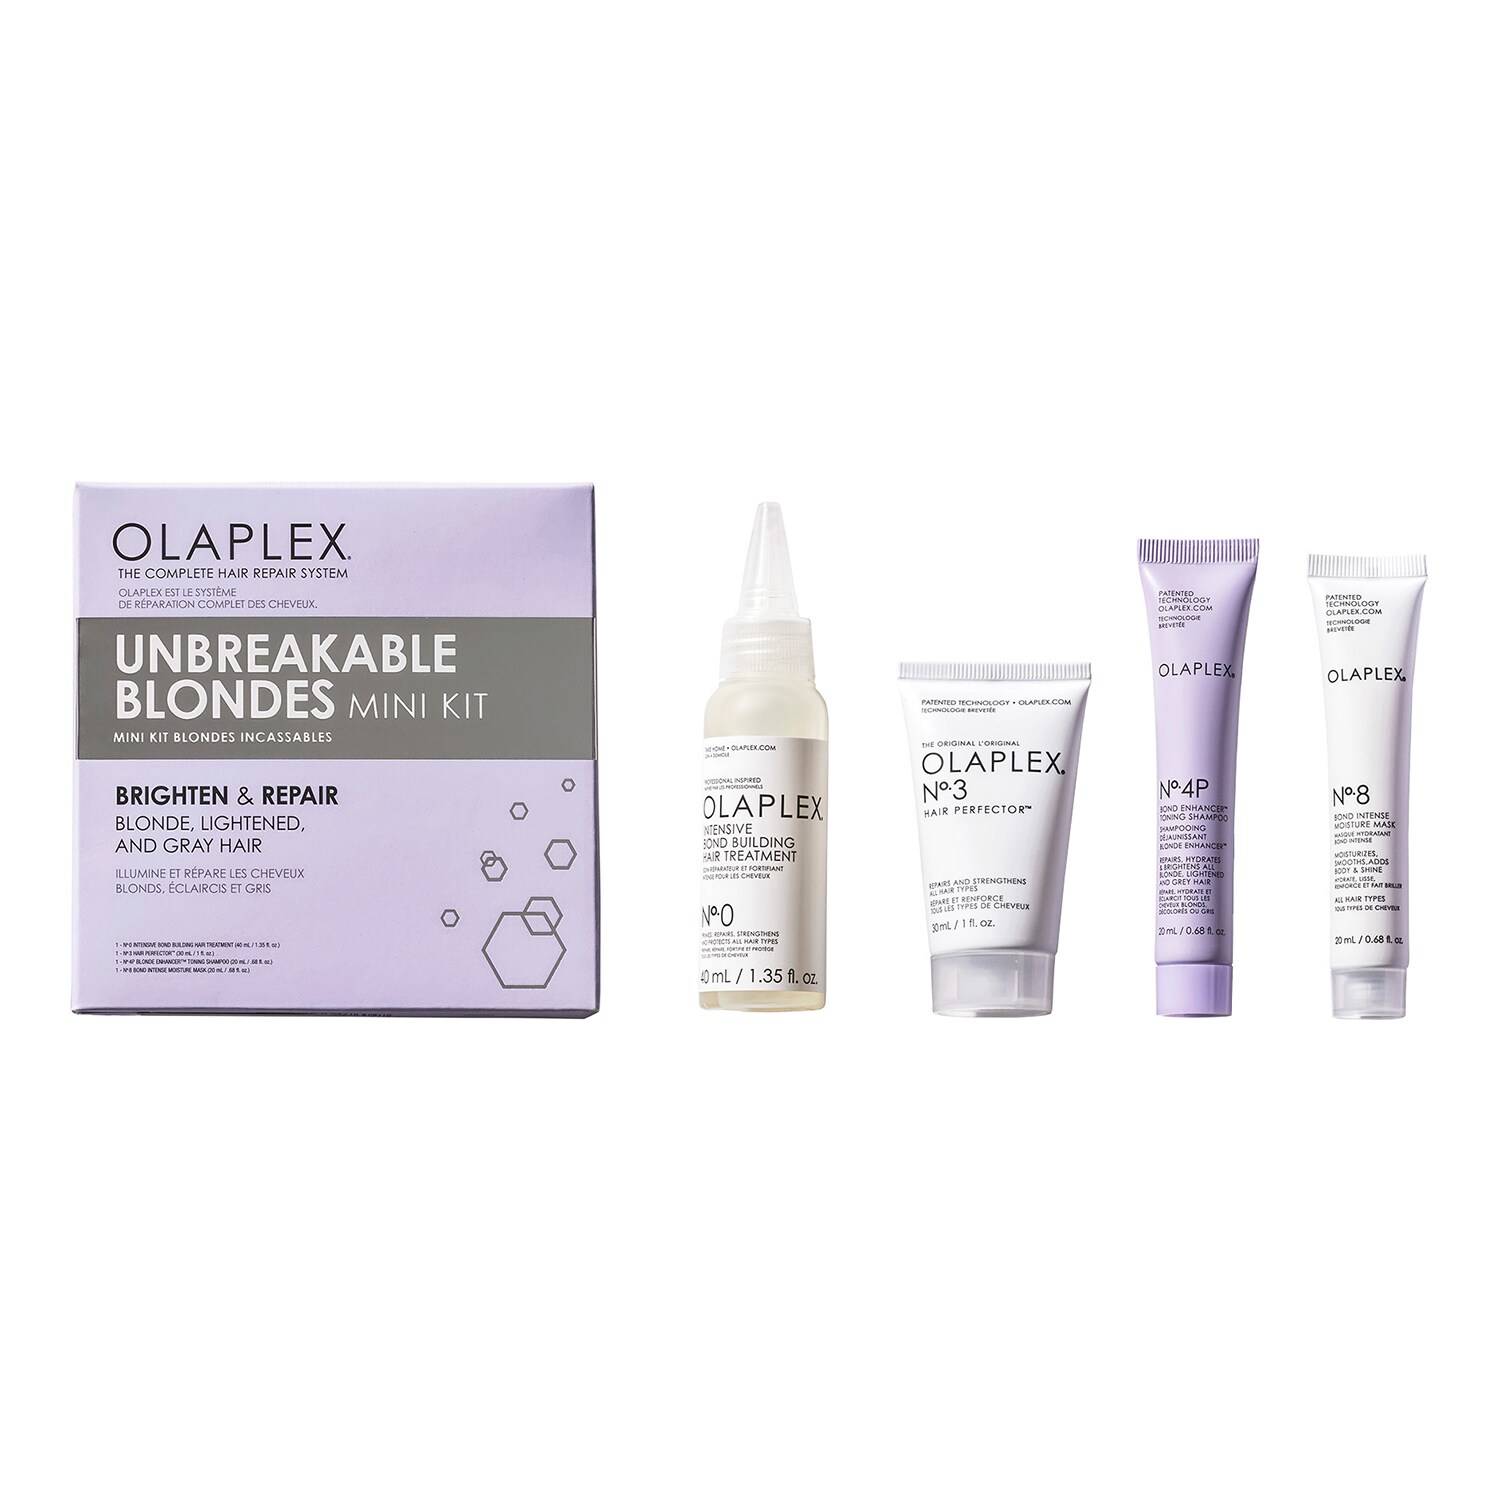 OLAPLEX Unbreakable Blondes Kit